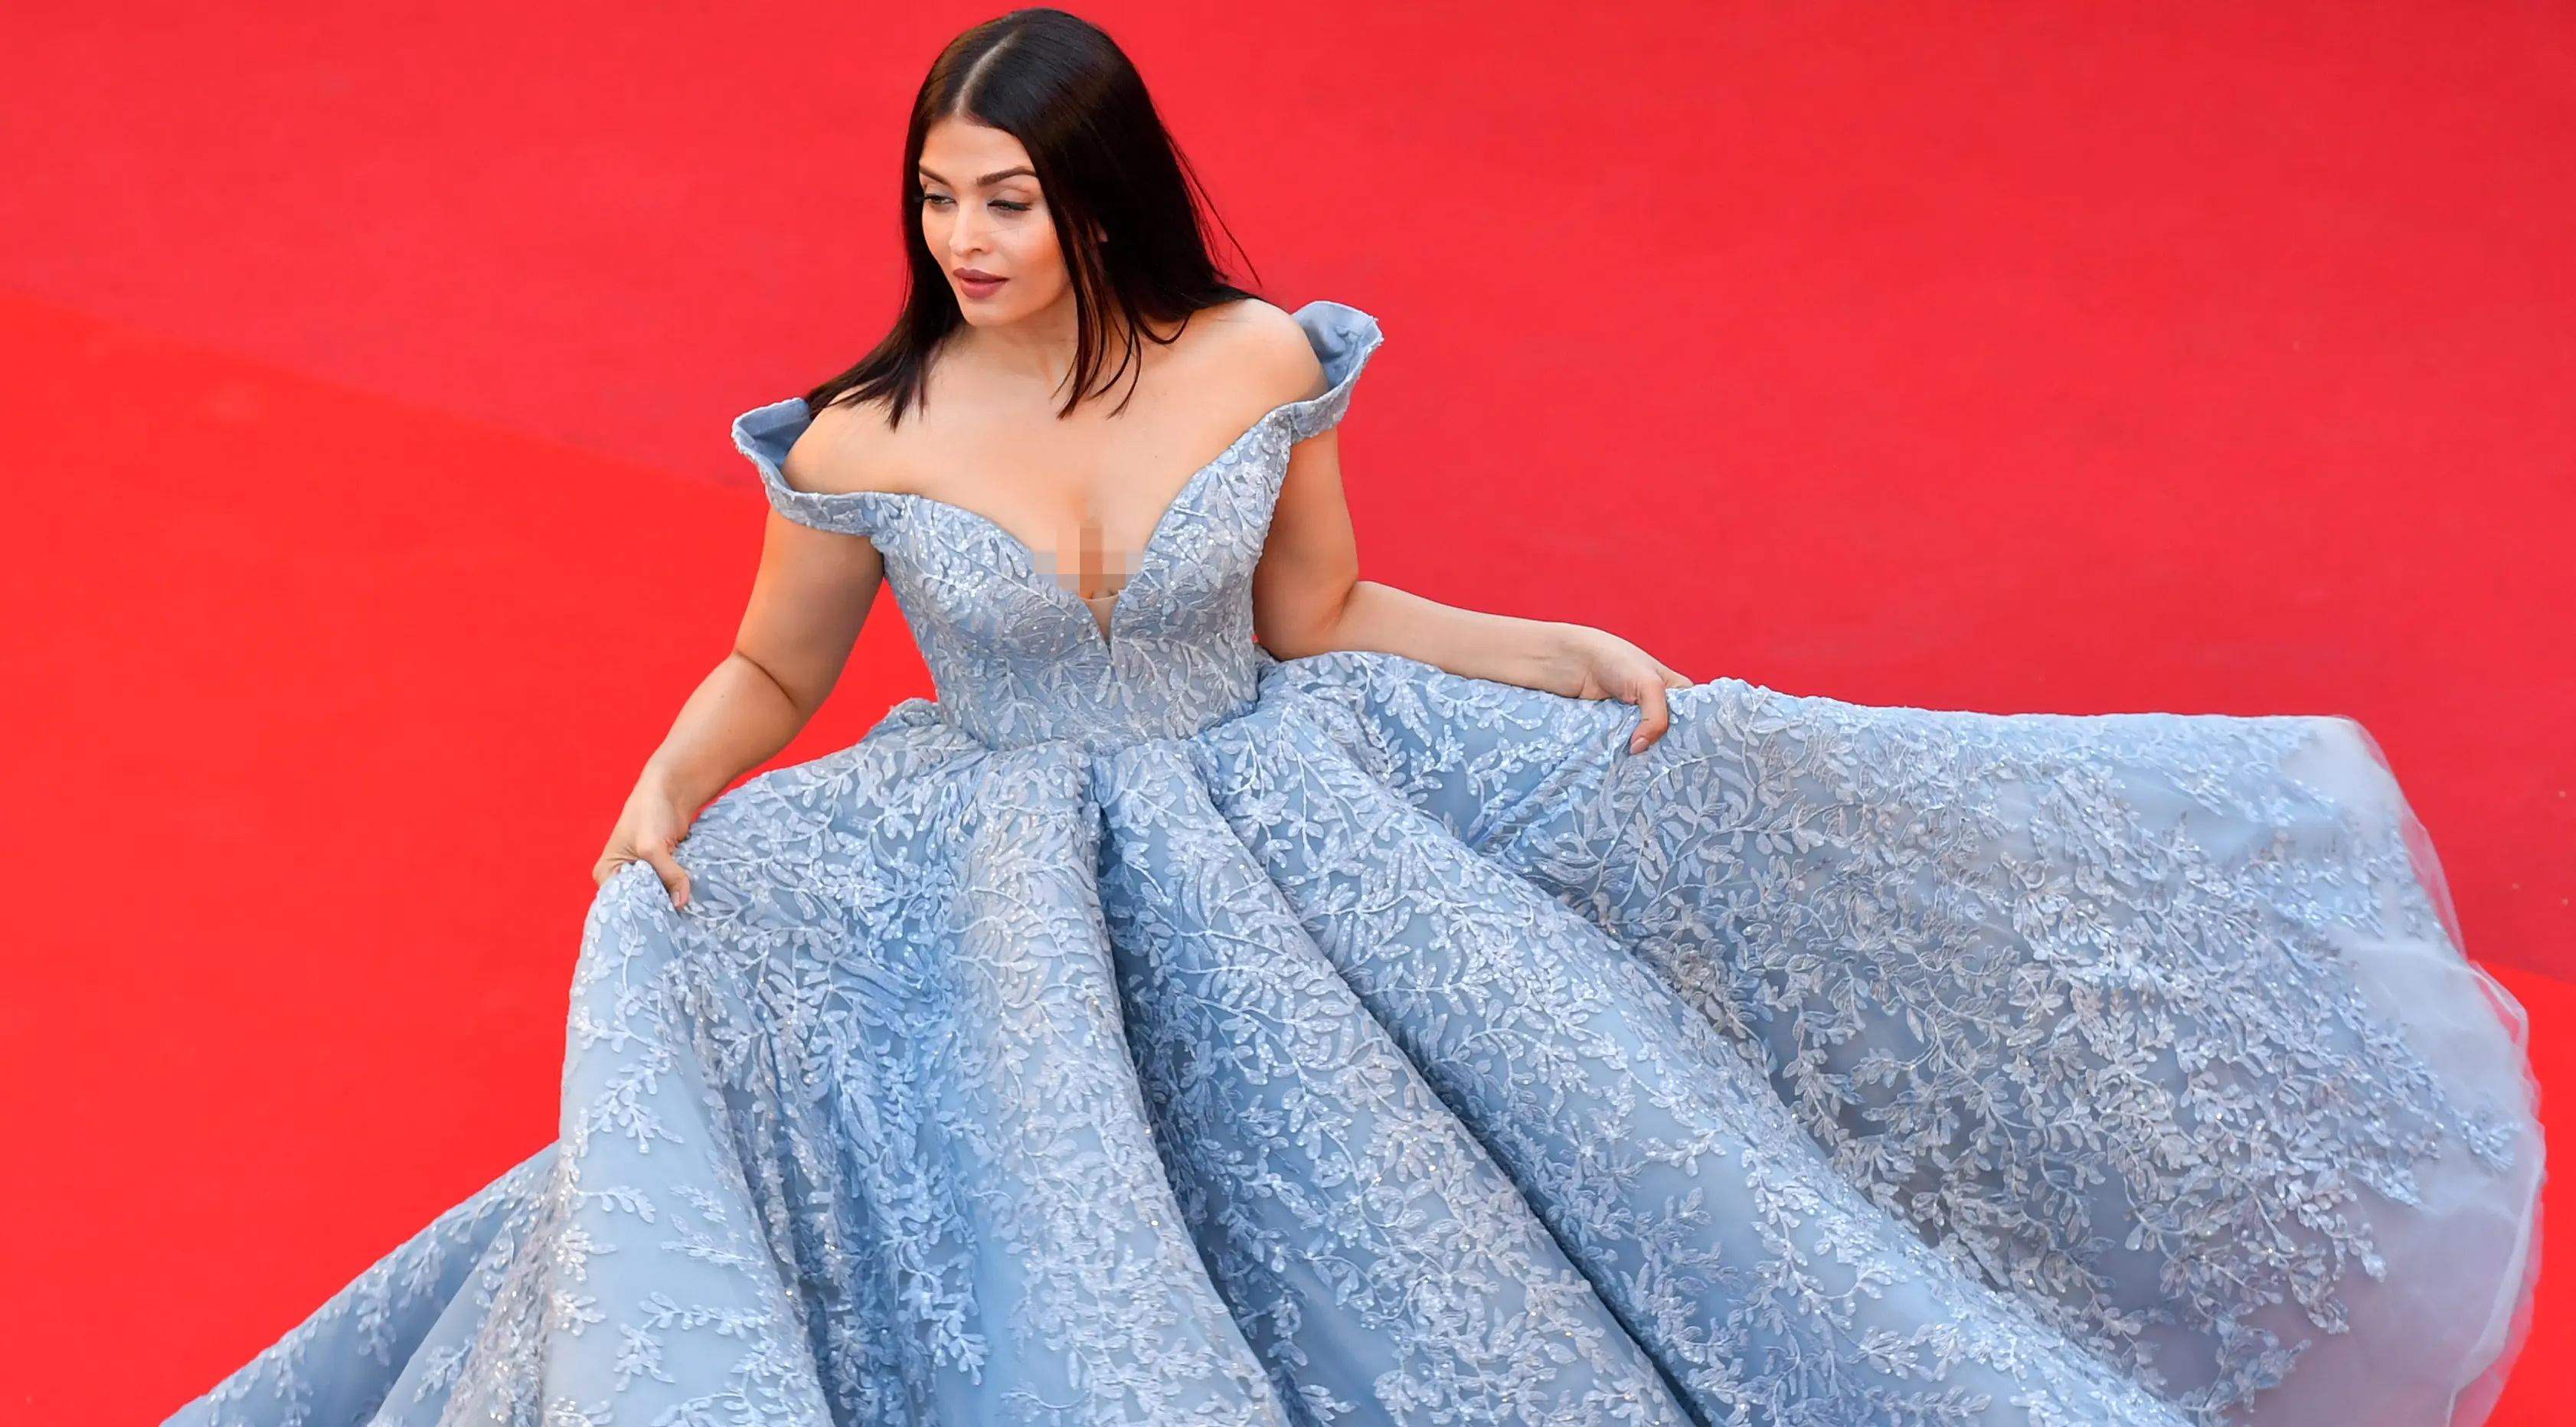 Penampilan memukau ktris Bollywood, Aishwarya Rai saat menghadiri pemutaran film Okja di karpet merah Festival Film Cannes 2017, 19 Mei 2017. Aishwarya berubah menjadi cinderella dan langsung menjadi sorotan banyak mata. (Valery HACHE / AFP)